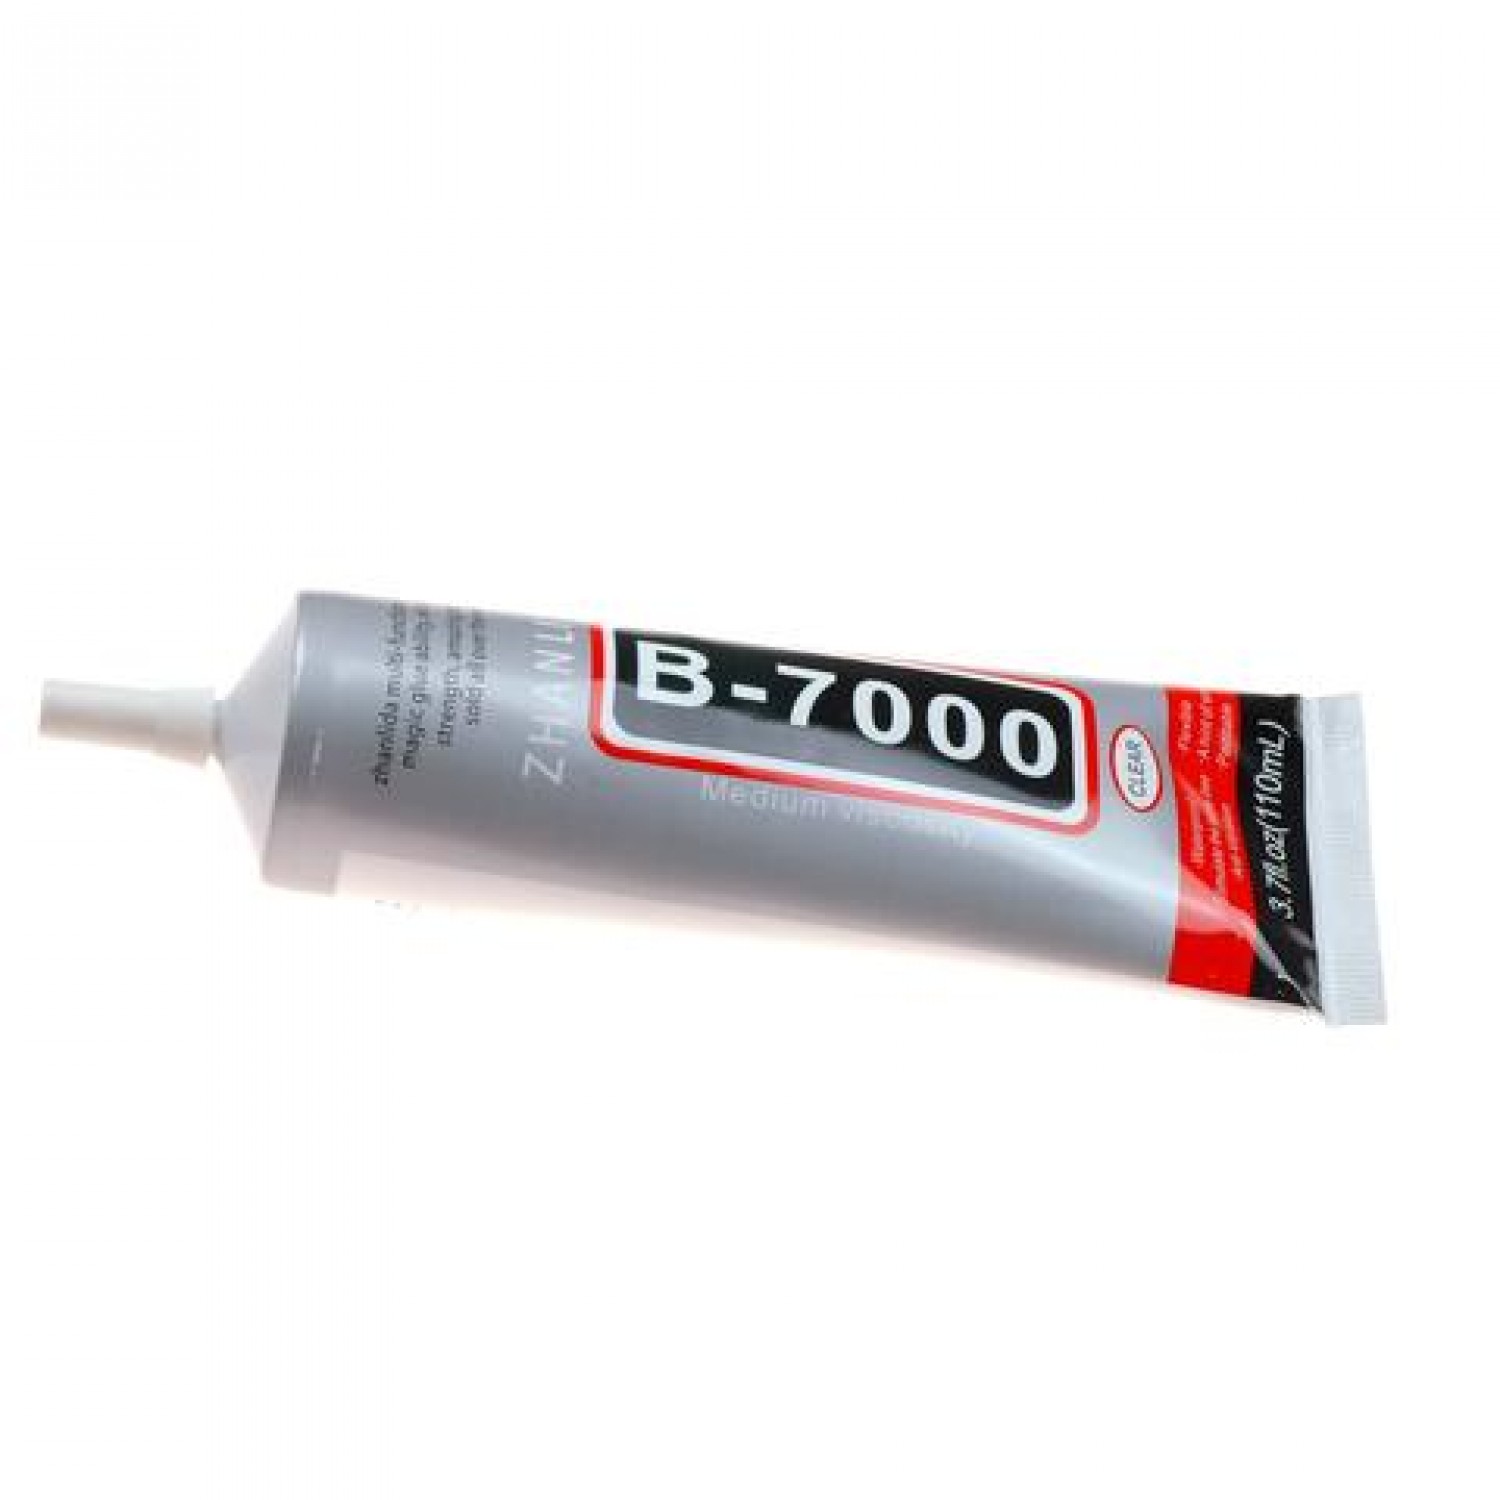 B7000 - 110mL Display Glue